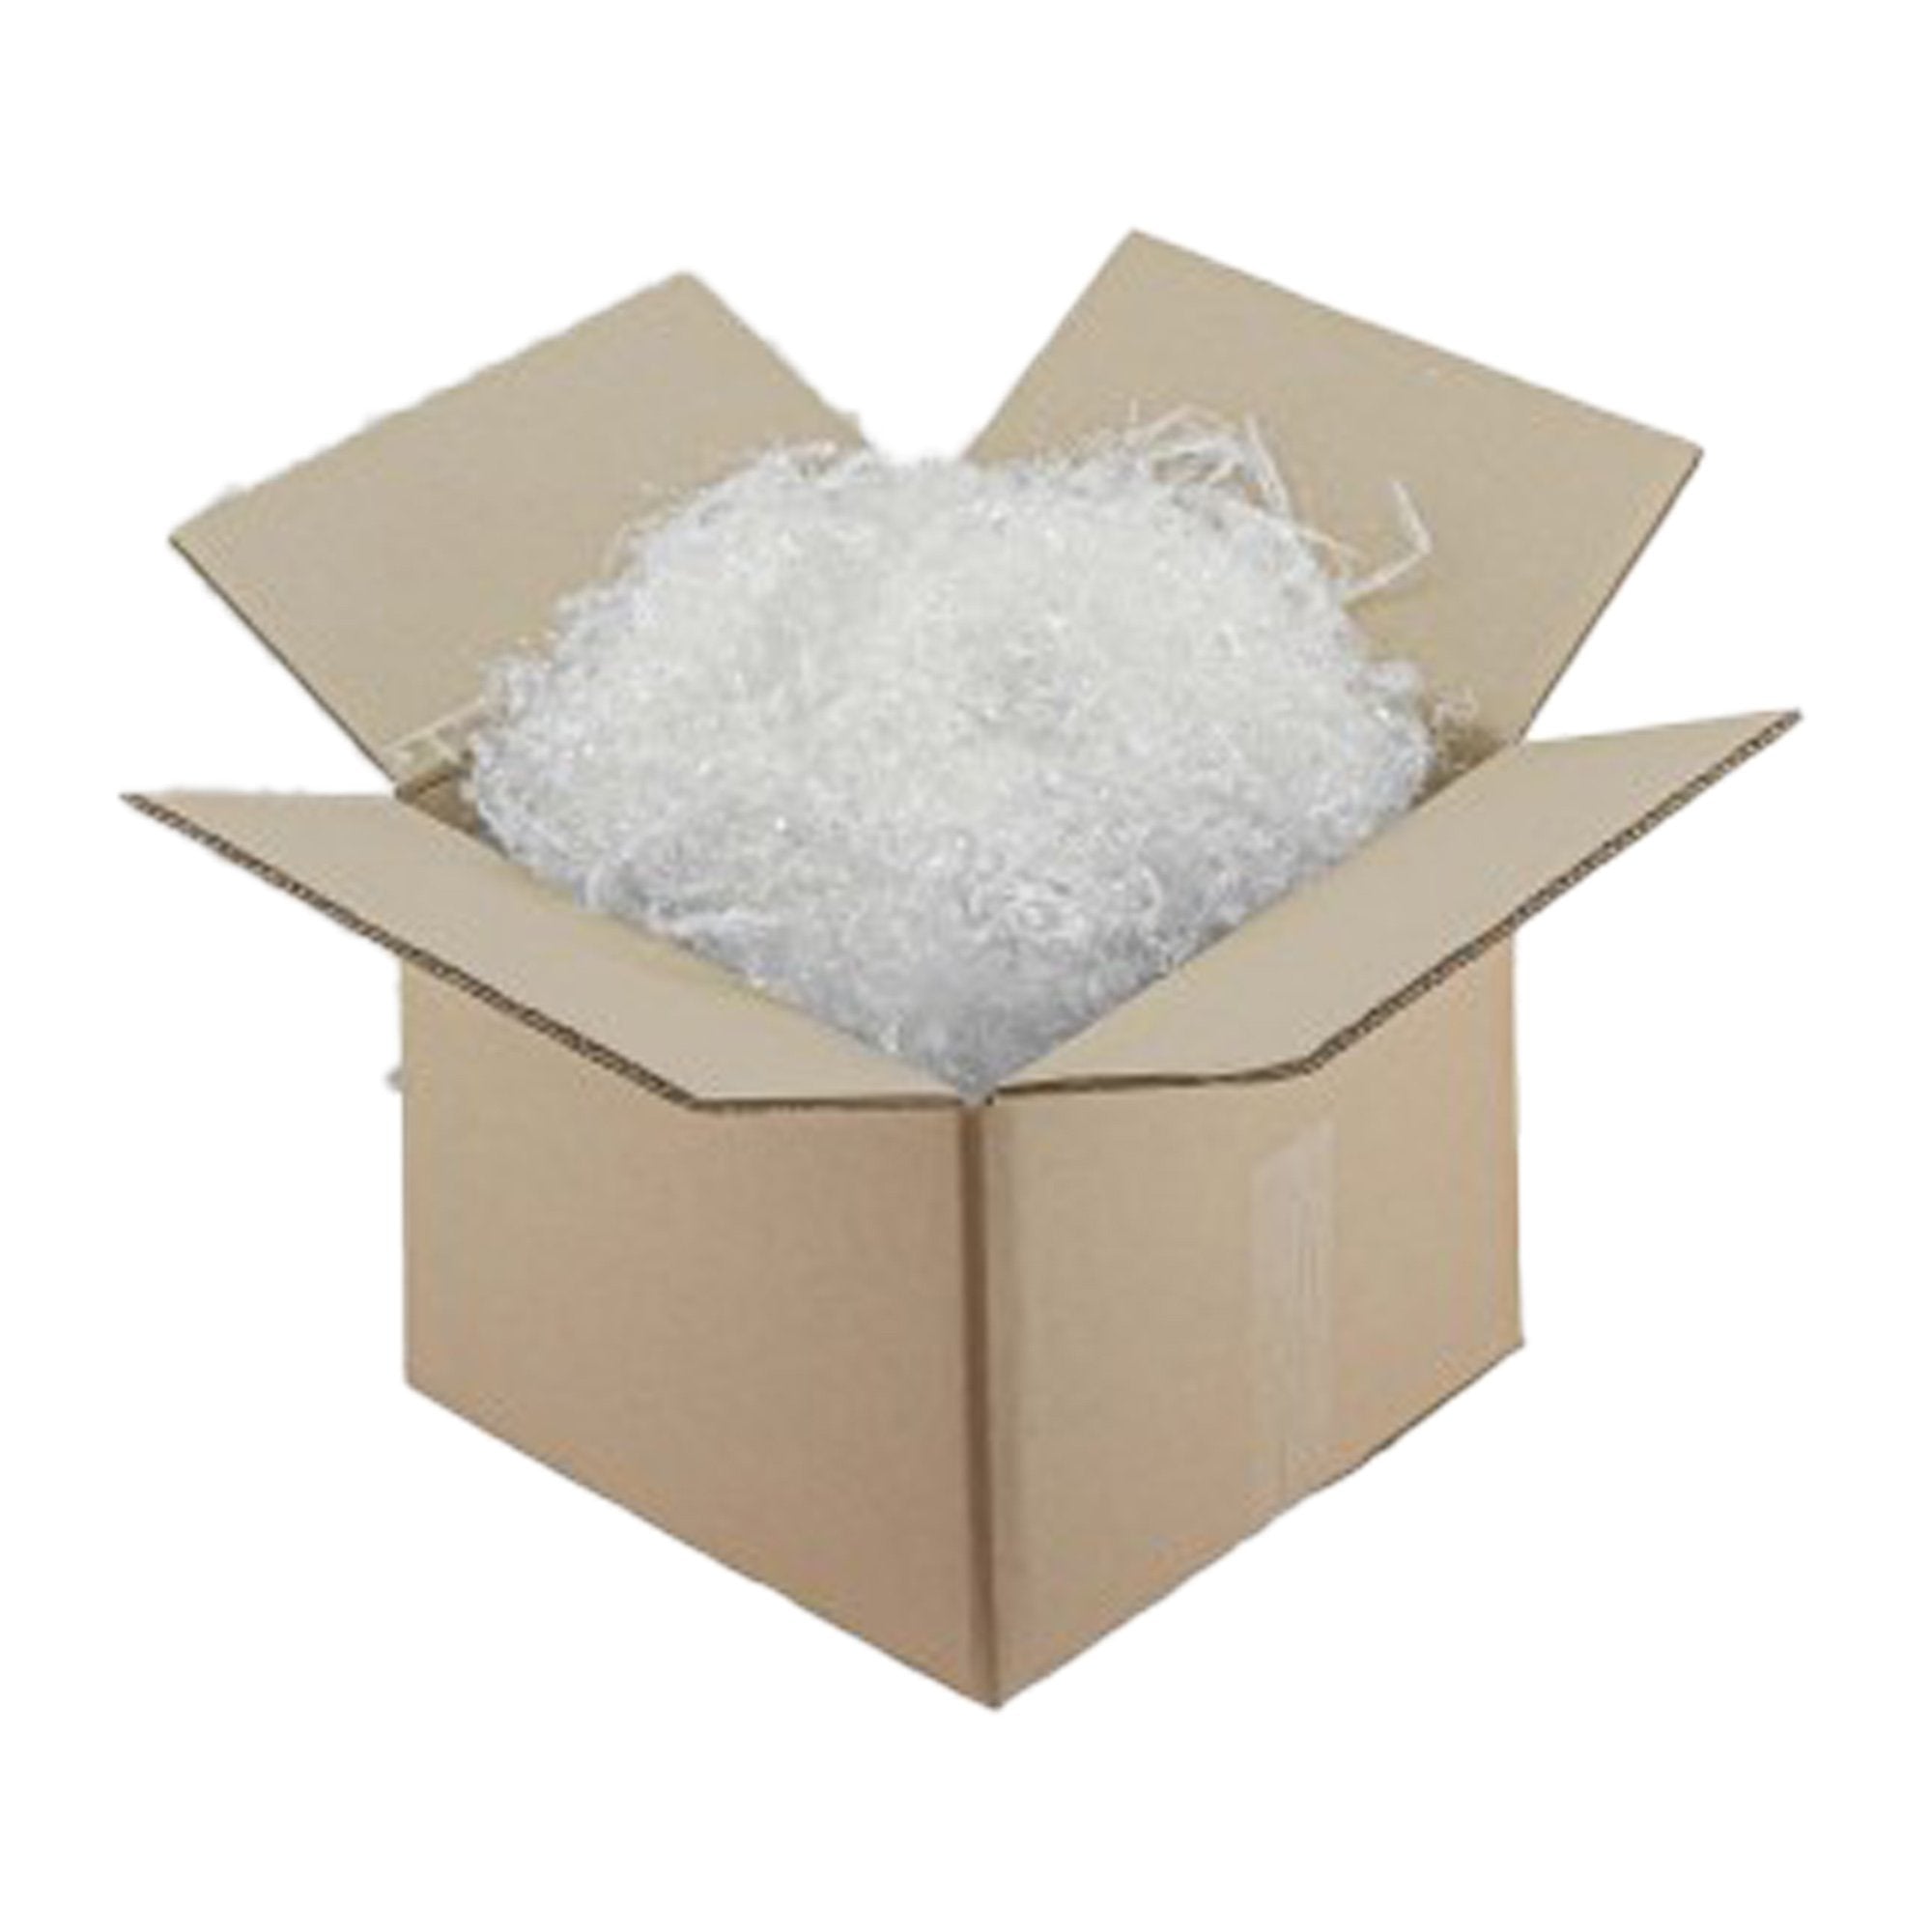 polyedra-scatola-trucciolo-imballaggio-polipropilene-trasparente-biodegradabile-5kg